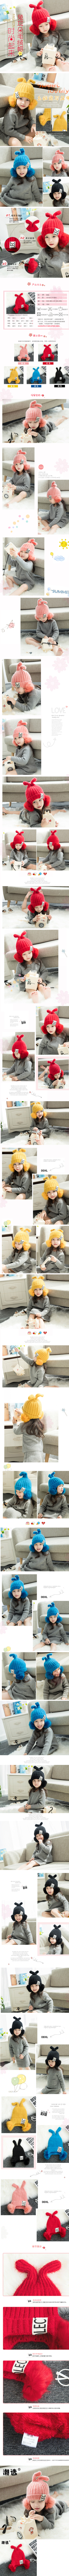 淘宝美工雨樱冬季新款儿童帽子2-4岁韩版女孩护耳脸保暖帽女宝公主帽-宝宝帽子作品